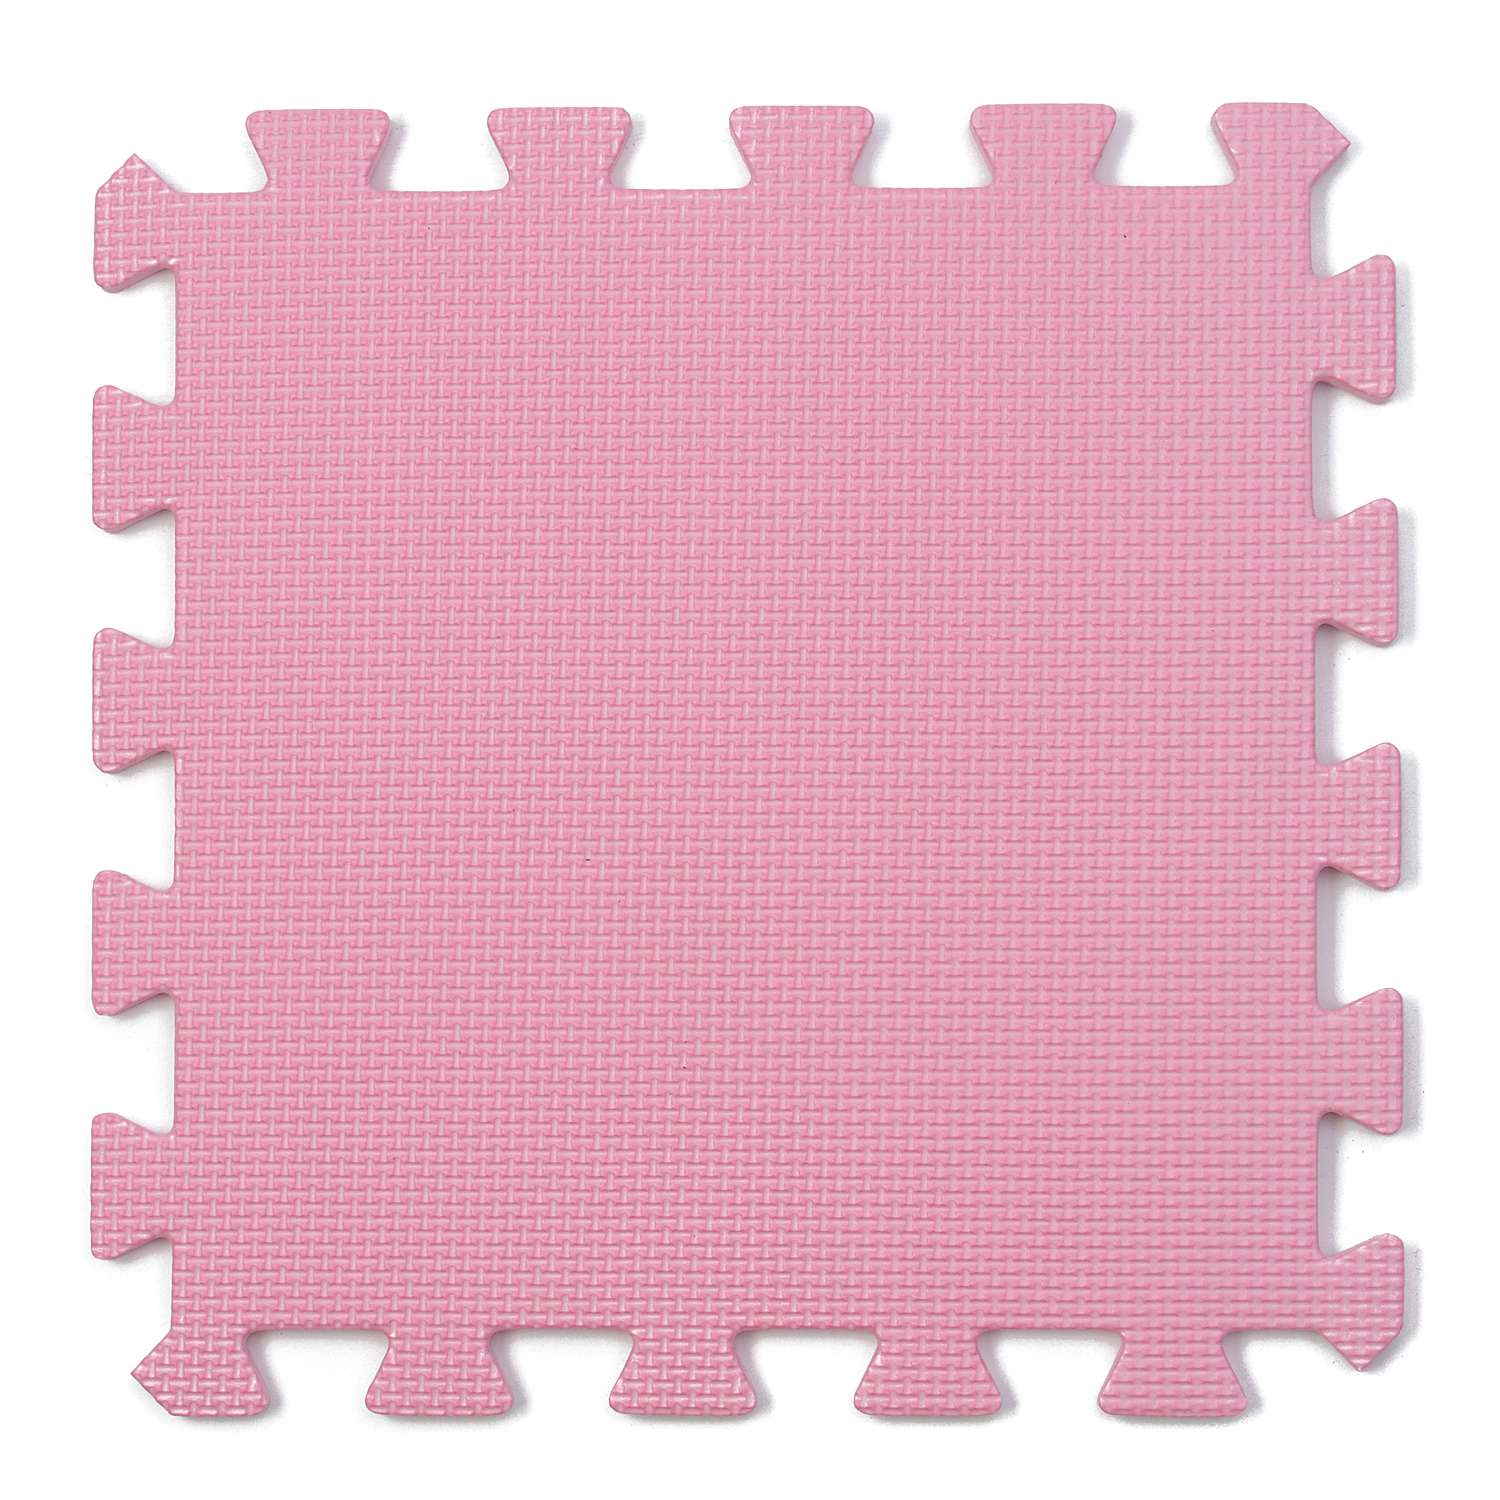 Коврик пазл детский WellMat Розовый 30x30x1 см 9 шт. с окантовкой игровой развивающий для ползания - фото 2